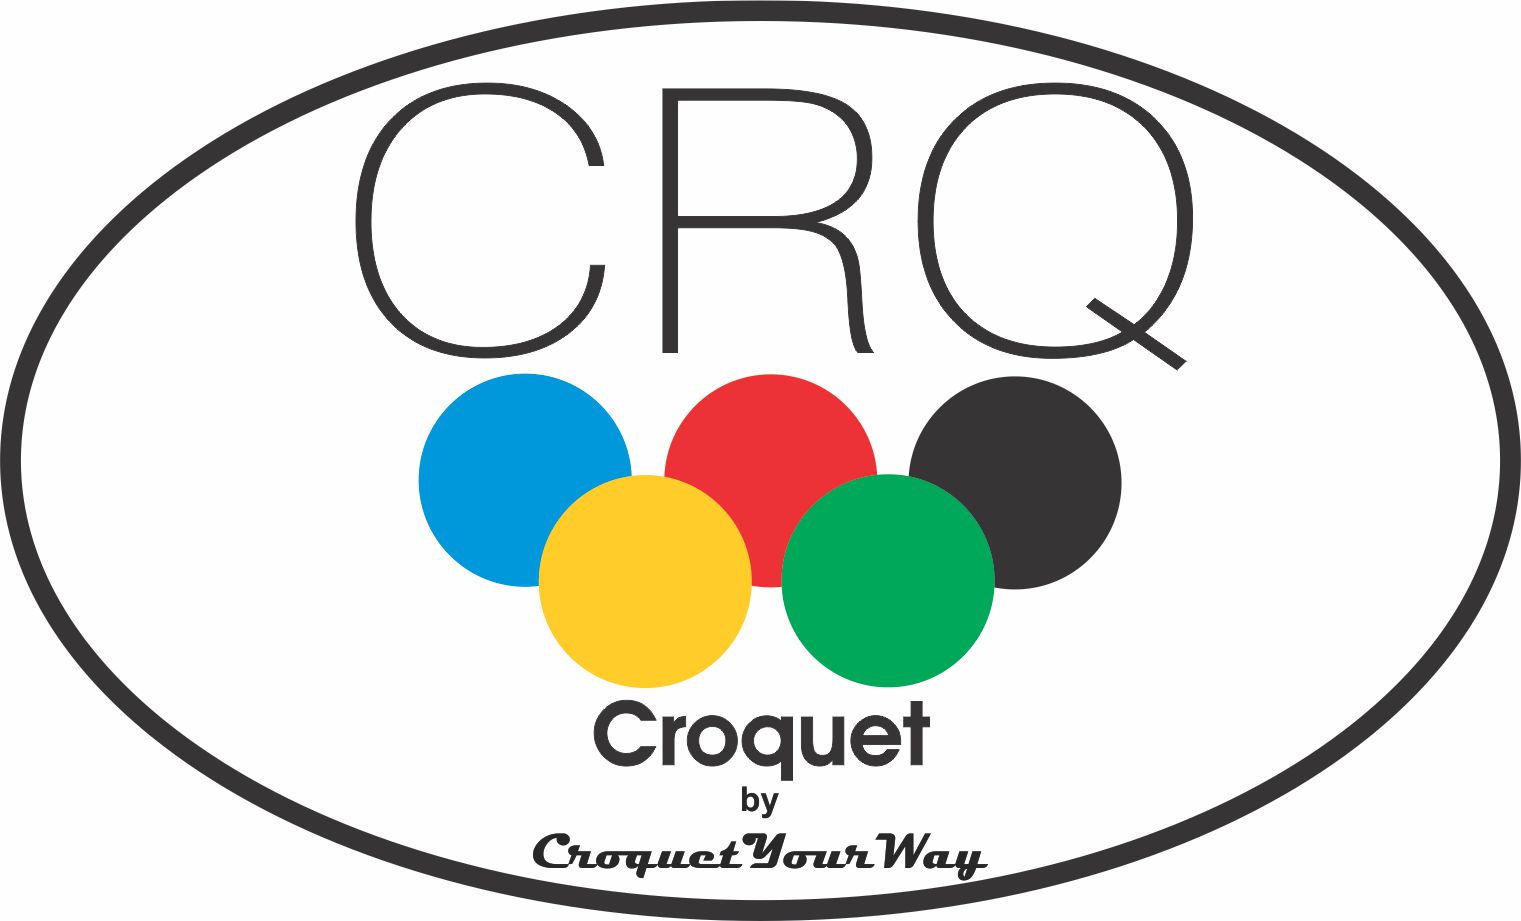 CRQ 712 Croquet Balls CRQ PRO-BALZ, USA, Classic, High Action, 10.8 oz, Black